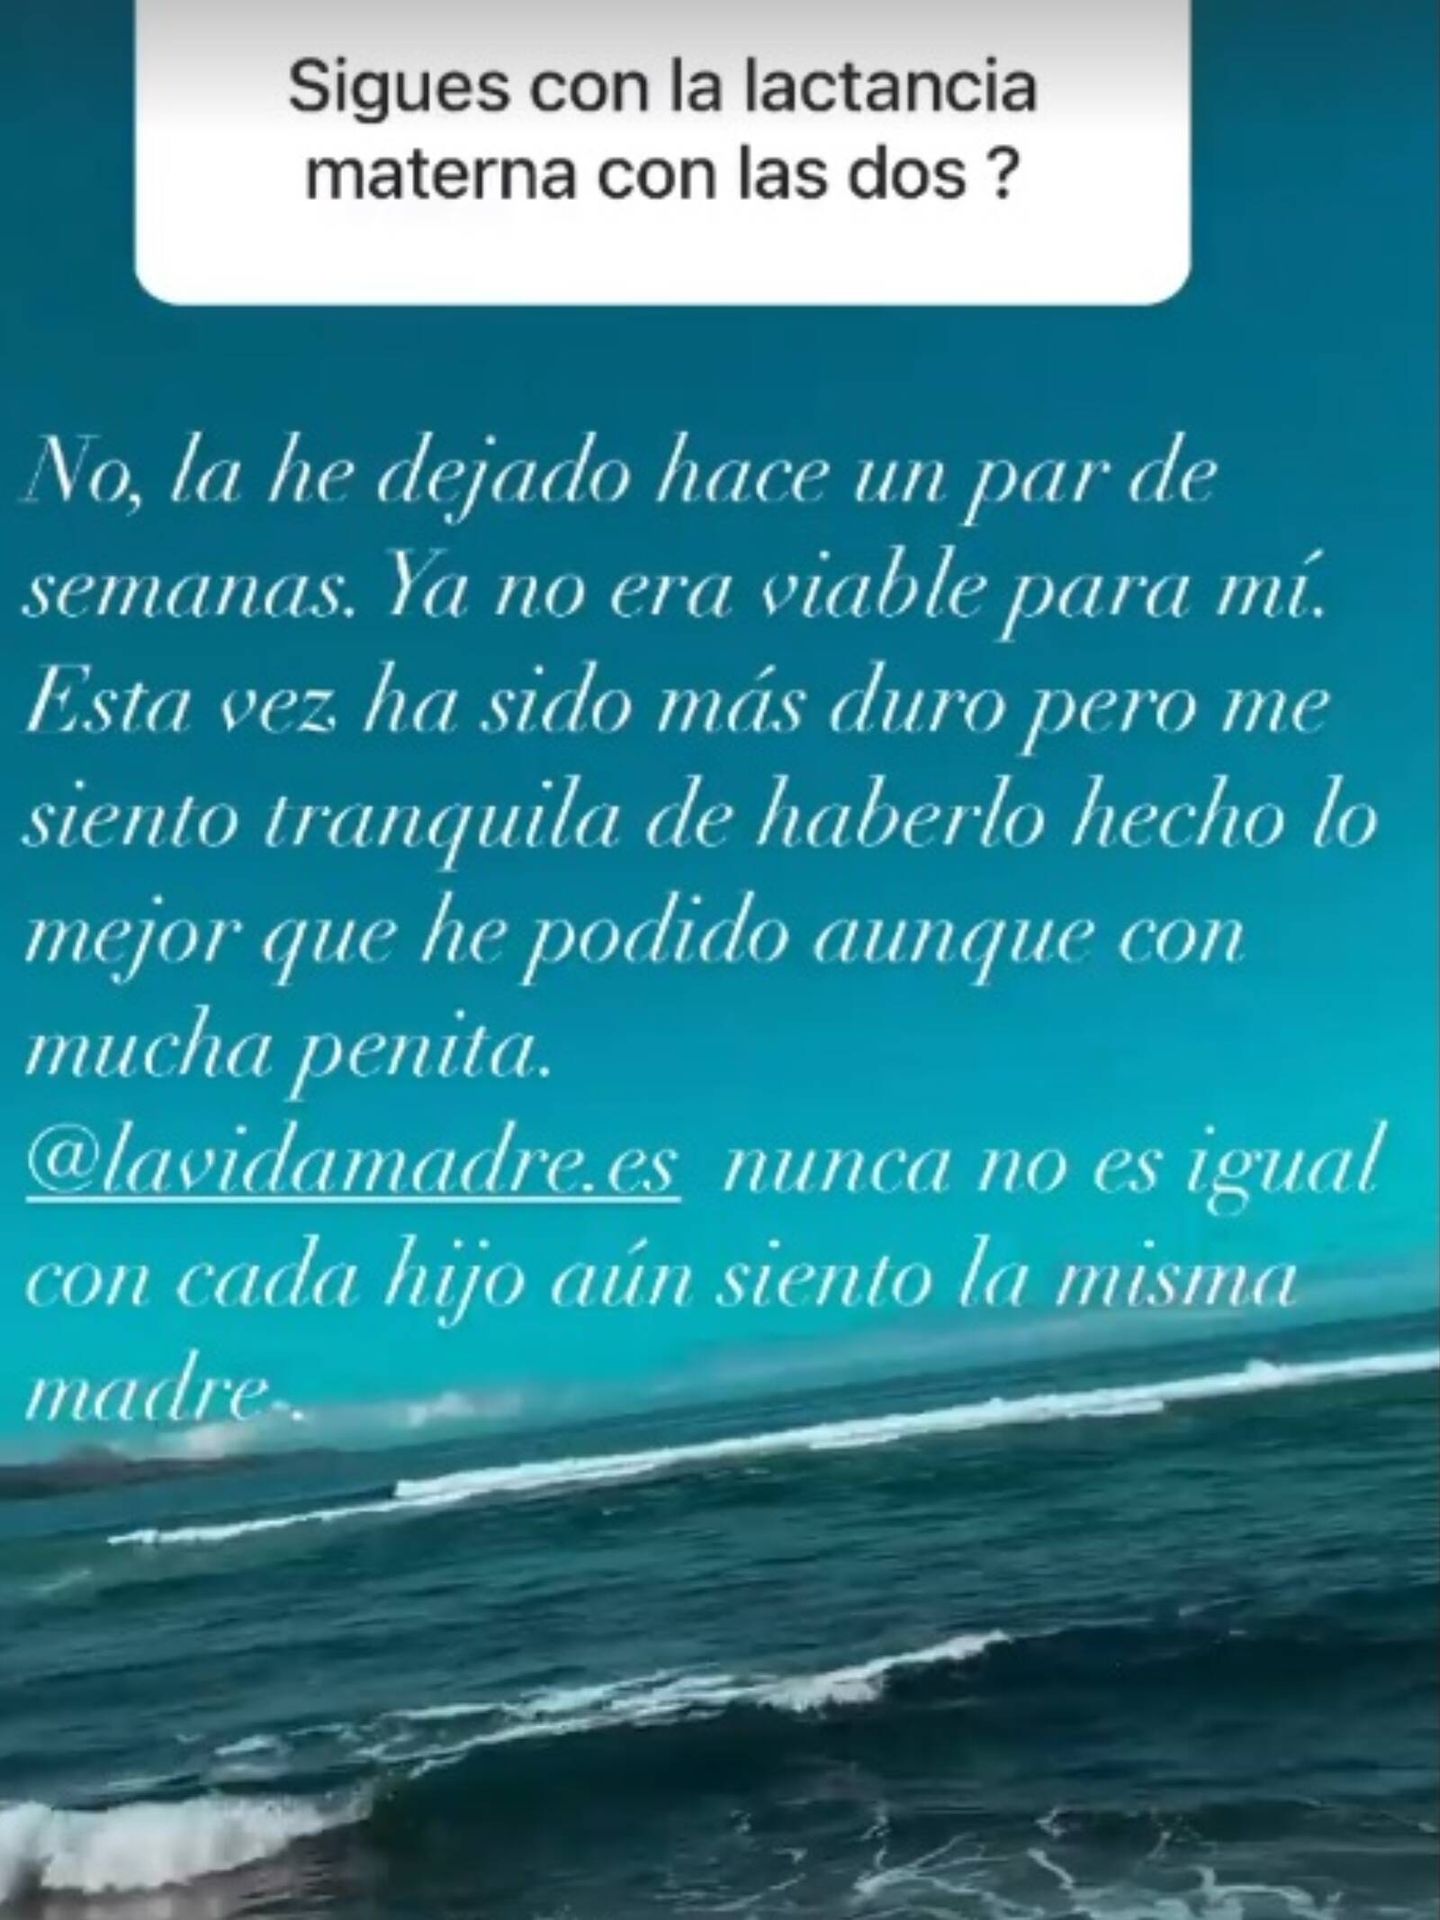 Ariadne Artiles responde en las redes sociales a temas muy personales. (Instagram, @ariadneartiles)